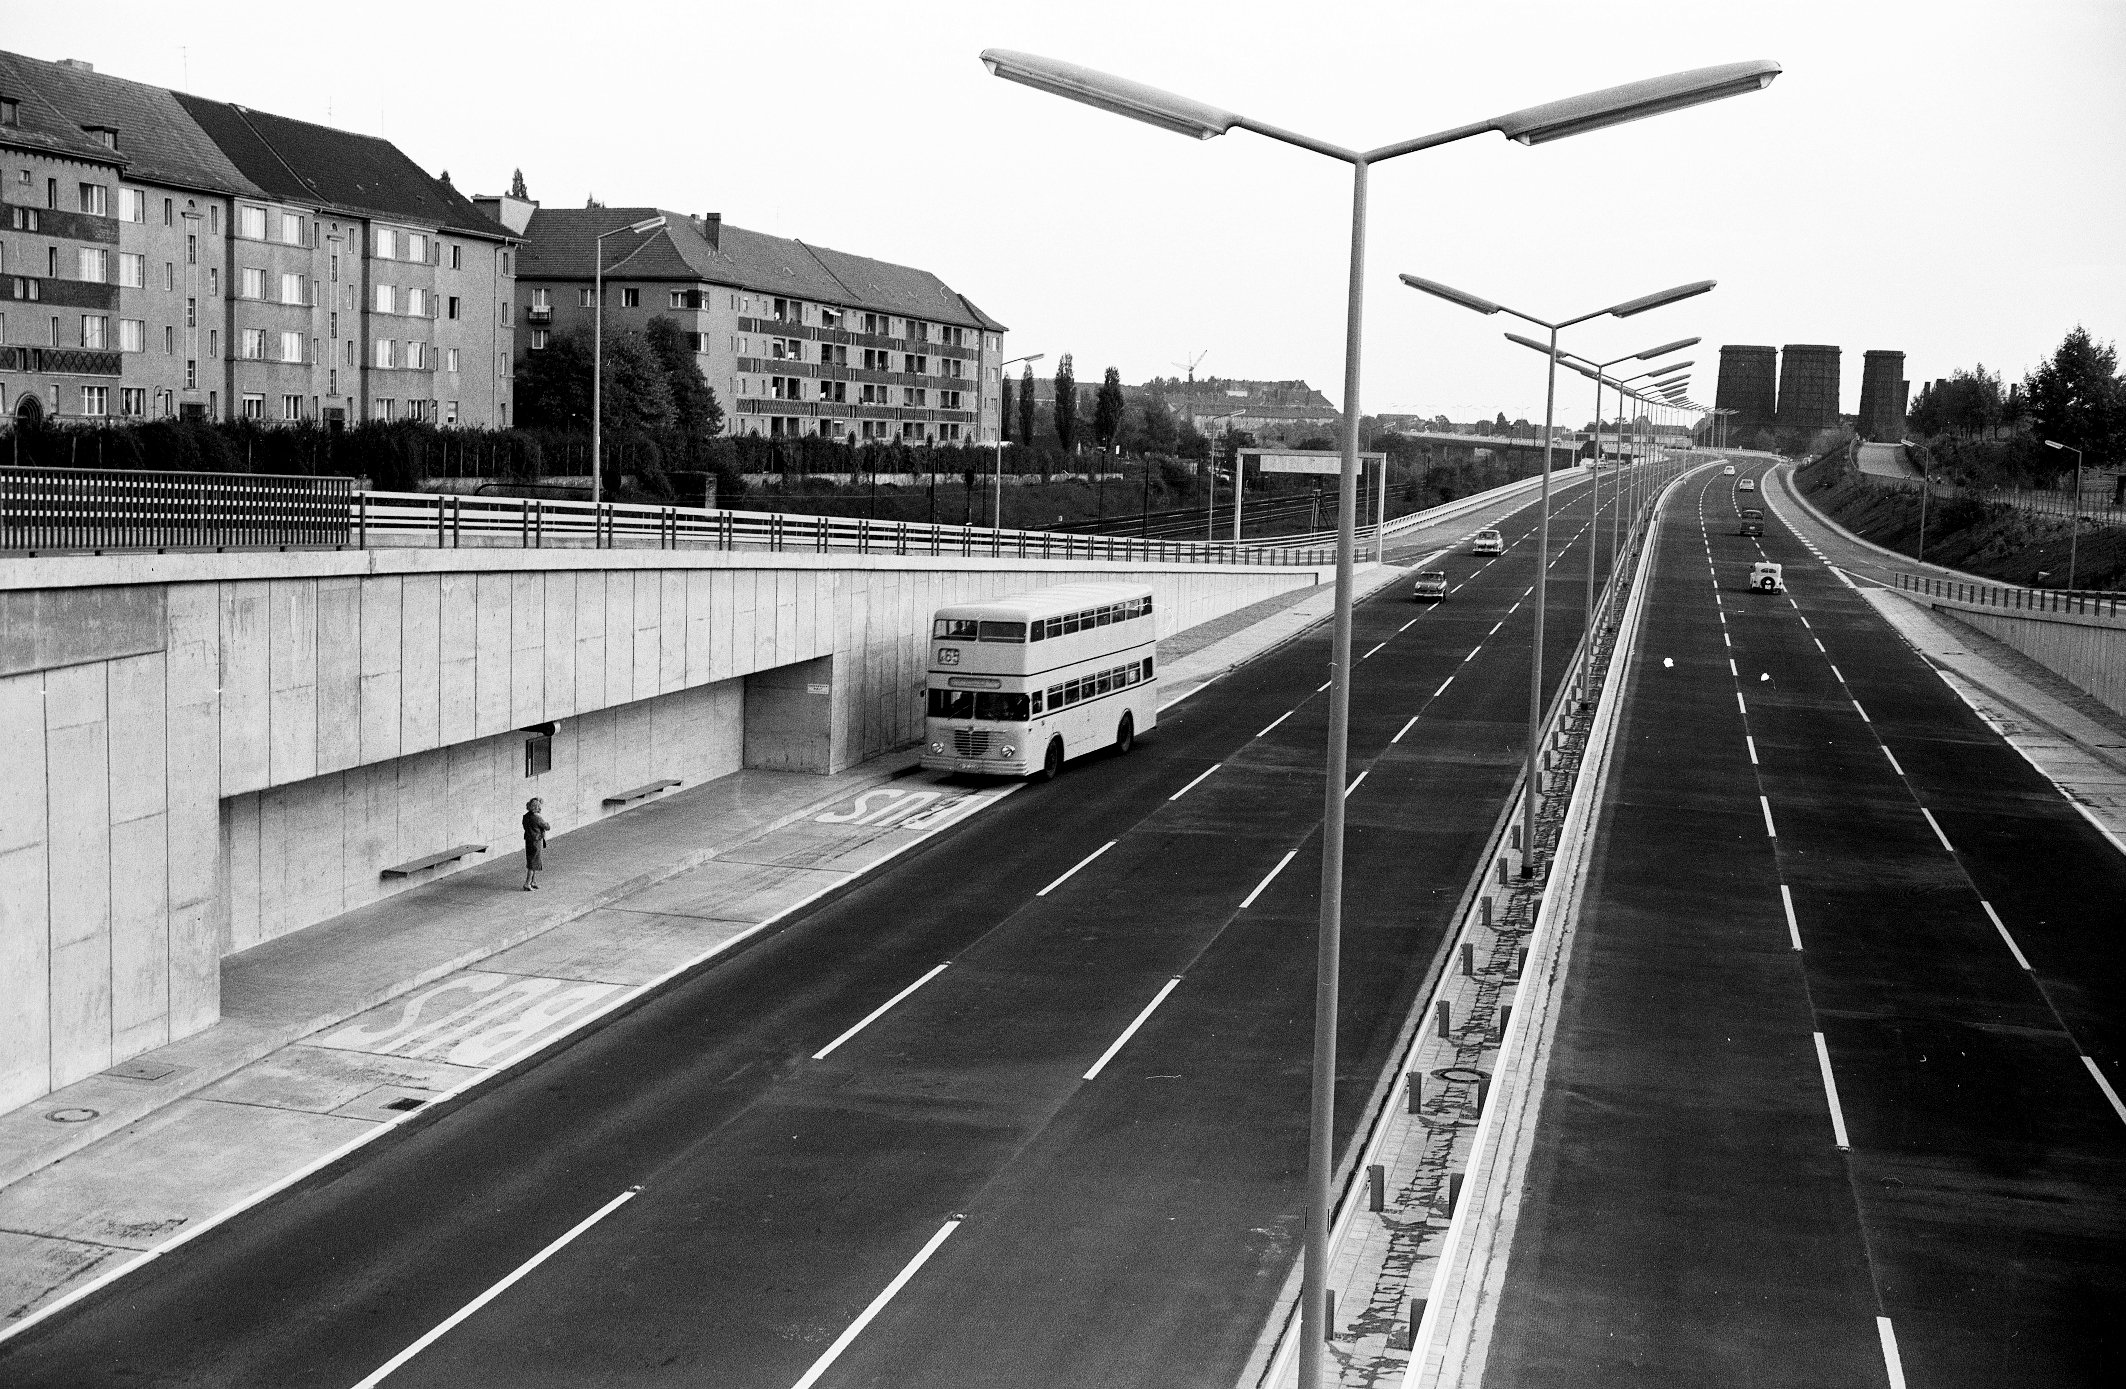 Bushaltestellen auf der Stadtautobahn: Haltestelle Hohenzollerndamm mit anfahrendem Bus, 1967. Foto: Herwarth Staudt/Historisches Archiv der BVG
